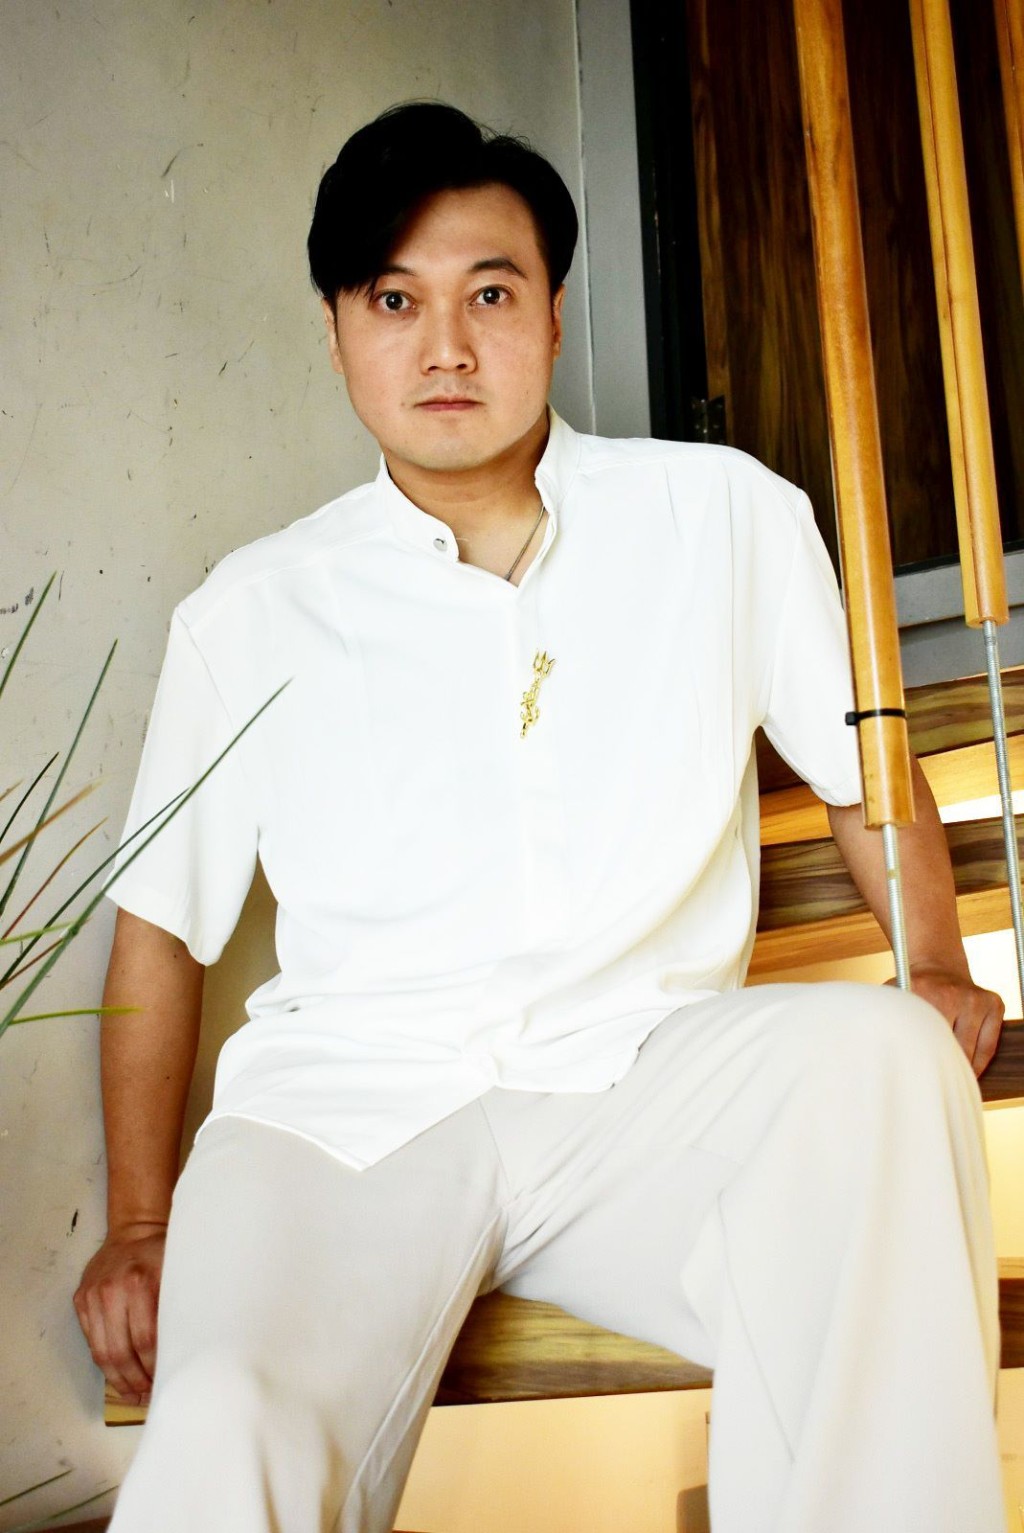 40岁的王嘉明仍然有歌星梦。